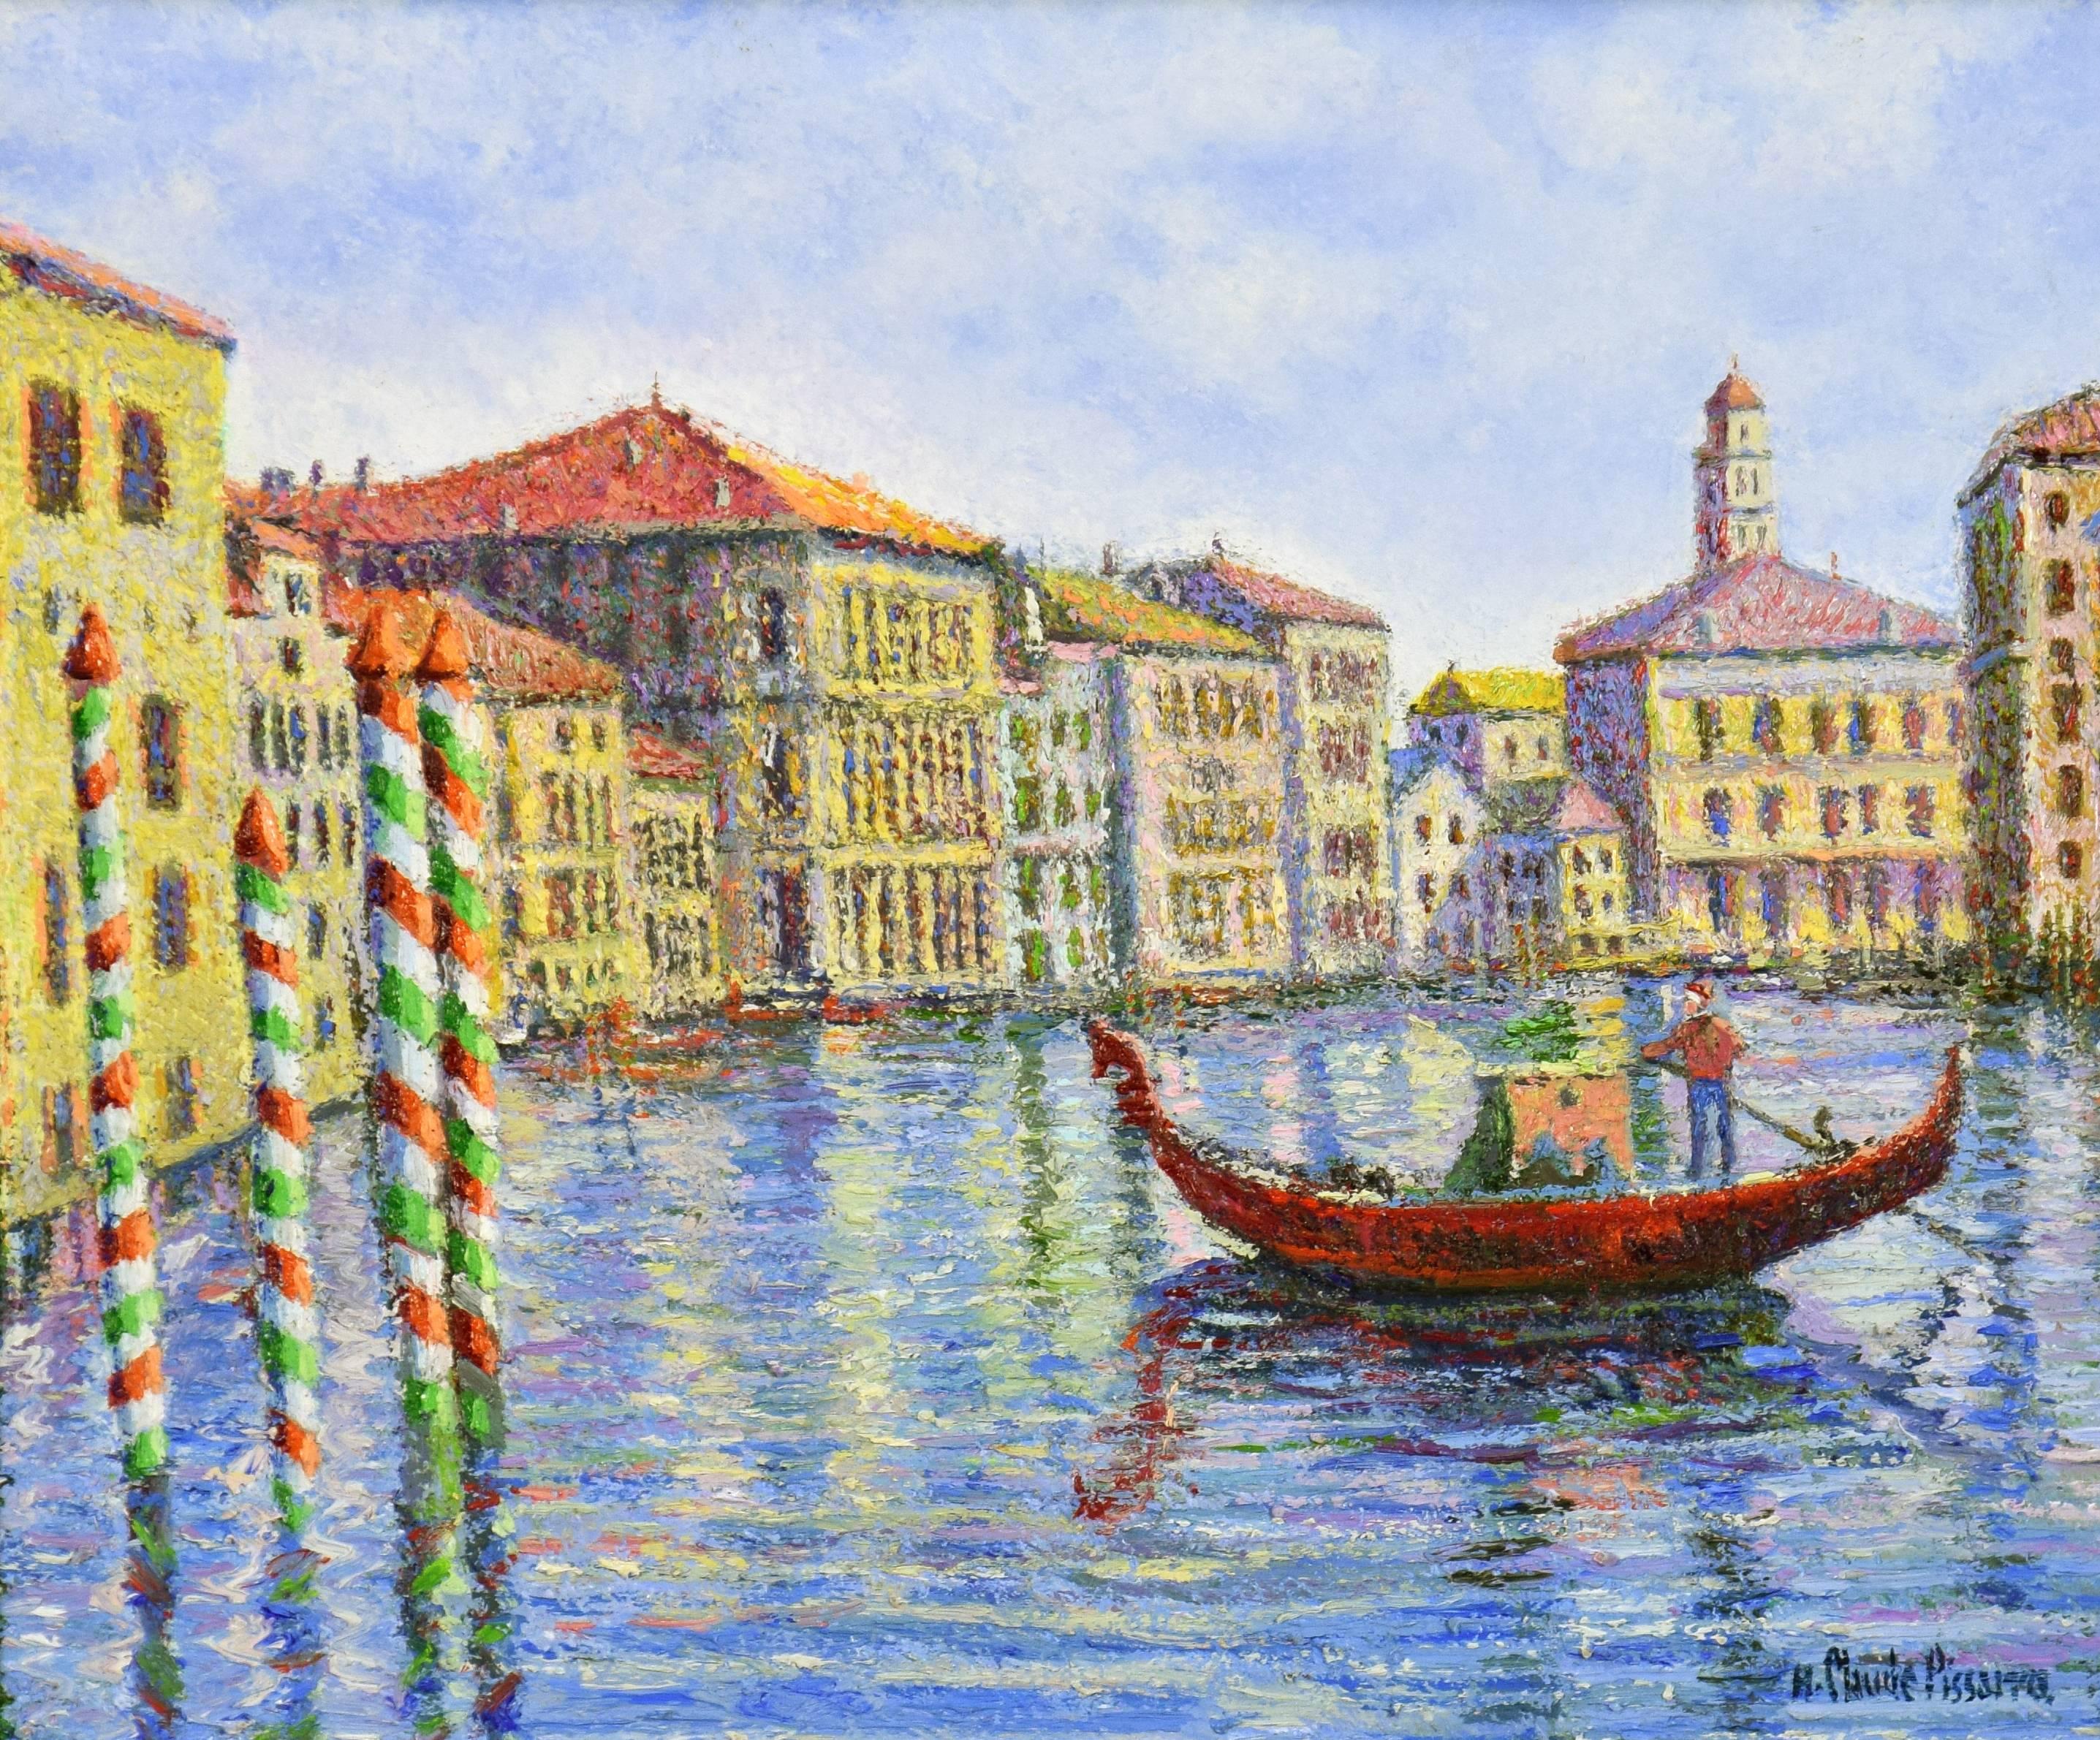 Crépuscule à Venise by H. CLAUDE PISSARRO - Post-Impressionist style painting